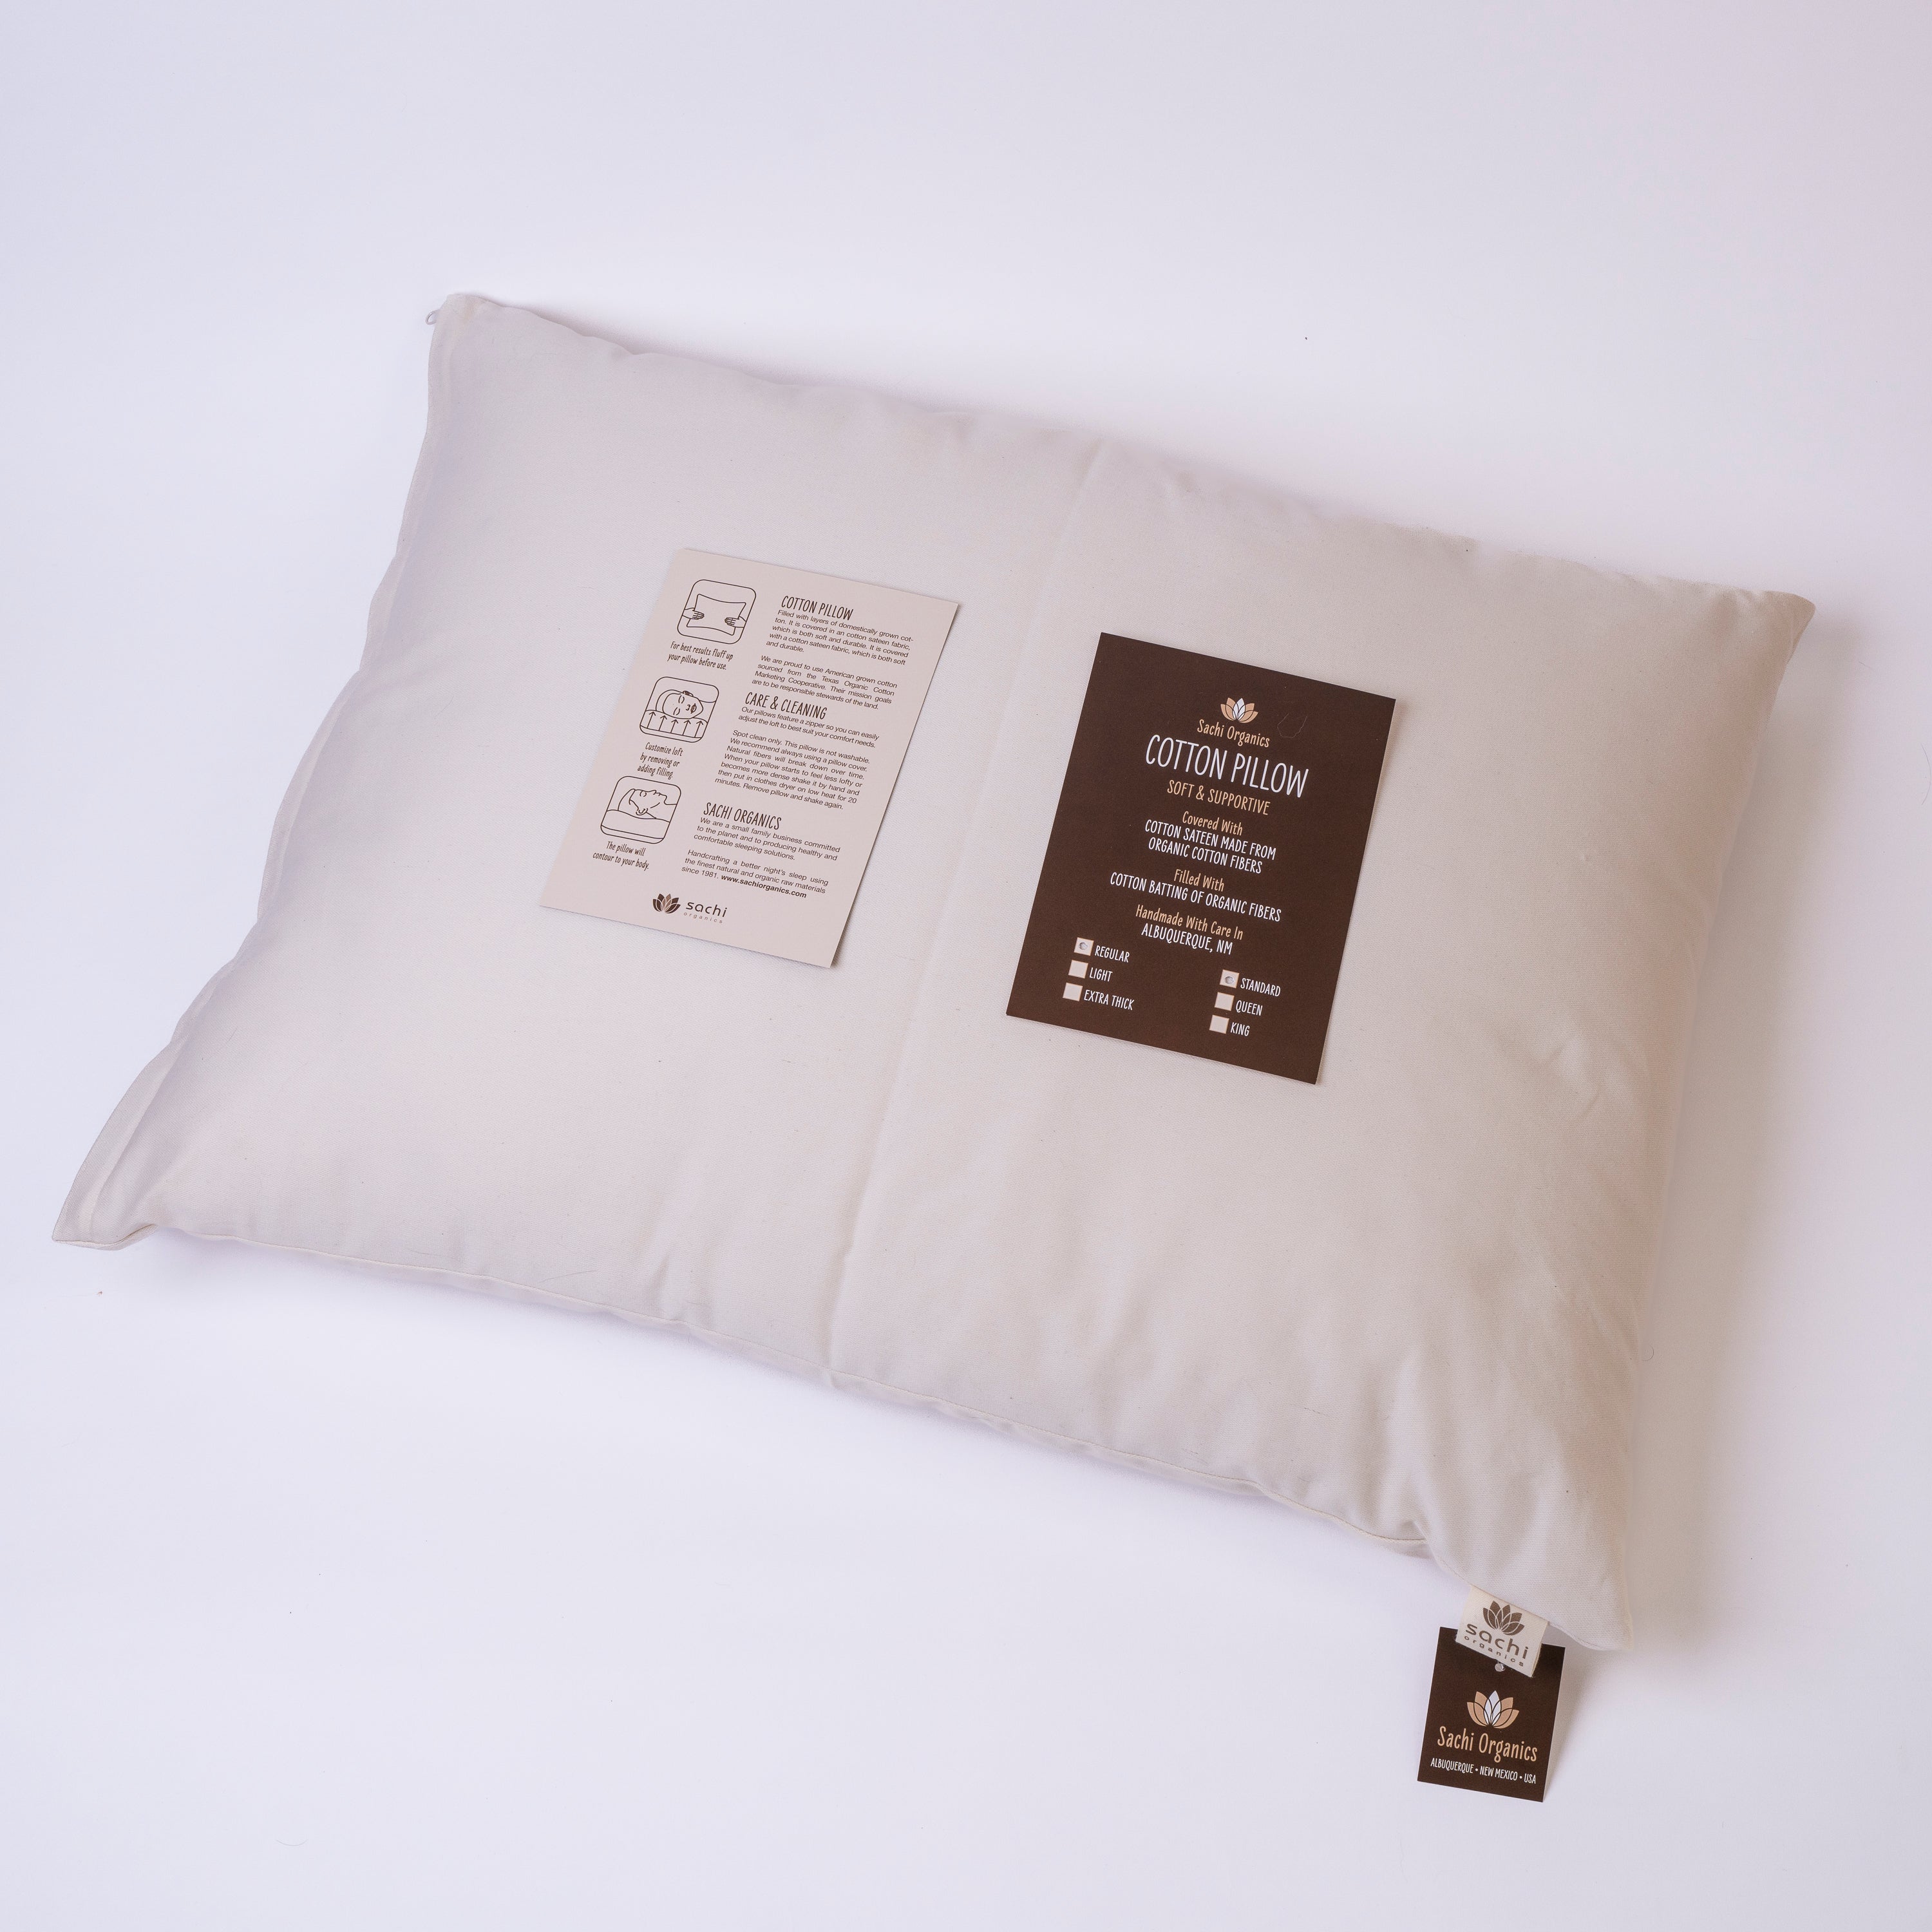 Extra Pillow Filling — Sachi Organics